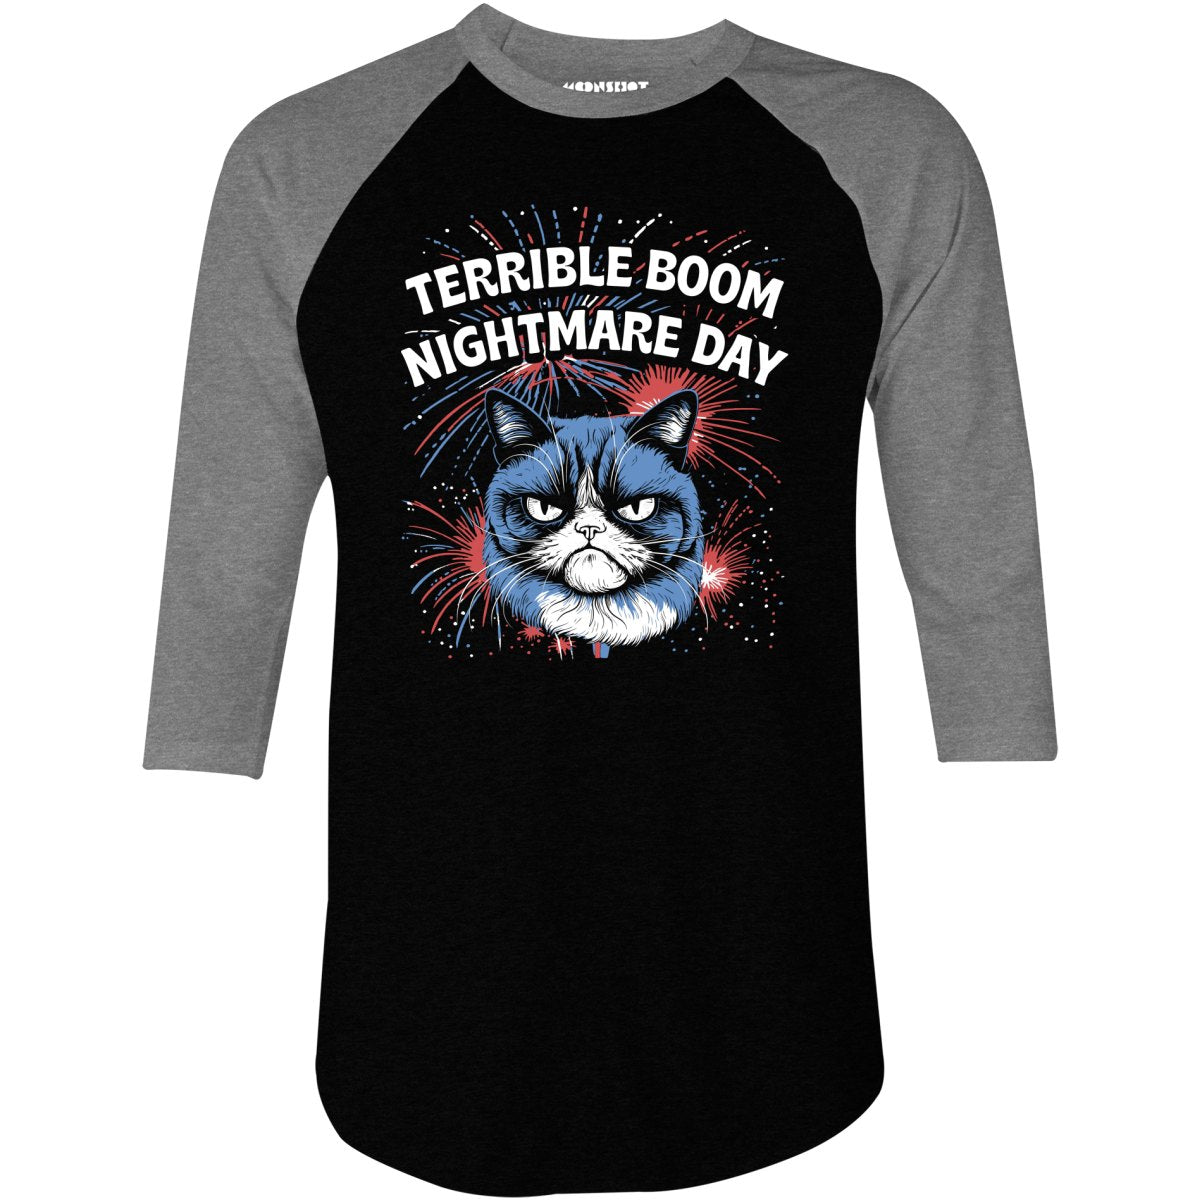 Terrible Boom Nightmare Day - 3/4 Sleeve Raglan T-Shirt